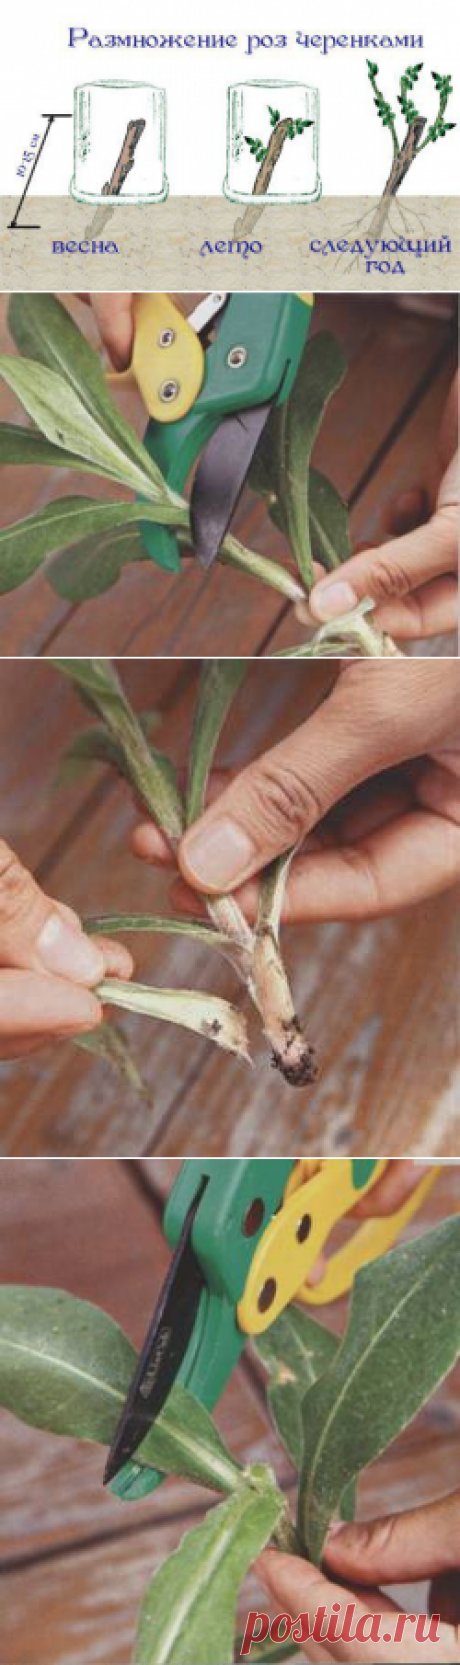 Размножение цветов черенкованием — 6 соток